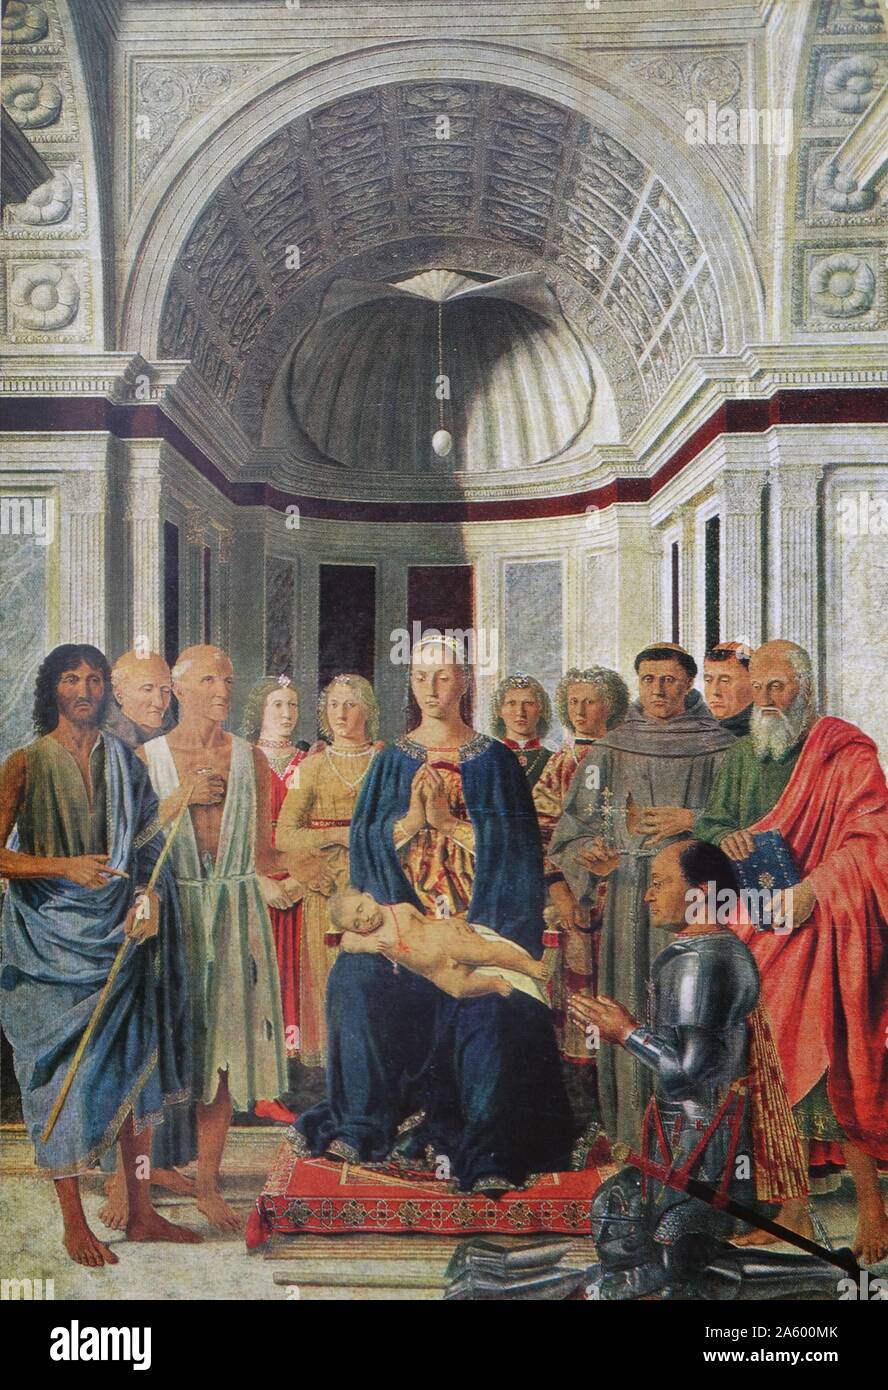 St Lucia la pala d altare di Domenico Veneziano (1410-1461) un pittore italiano del primo Rinascimento. Datata xv secolo Foto Stock